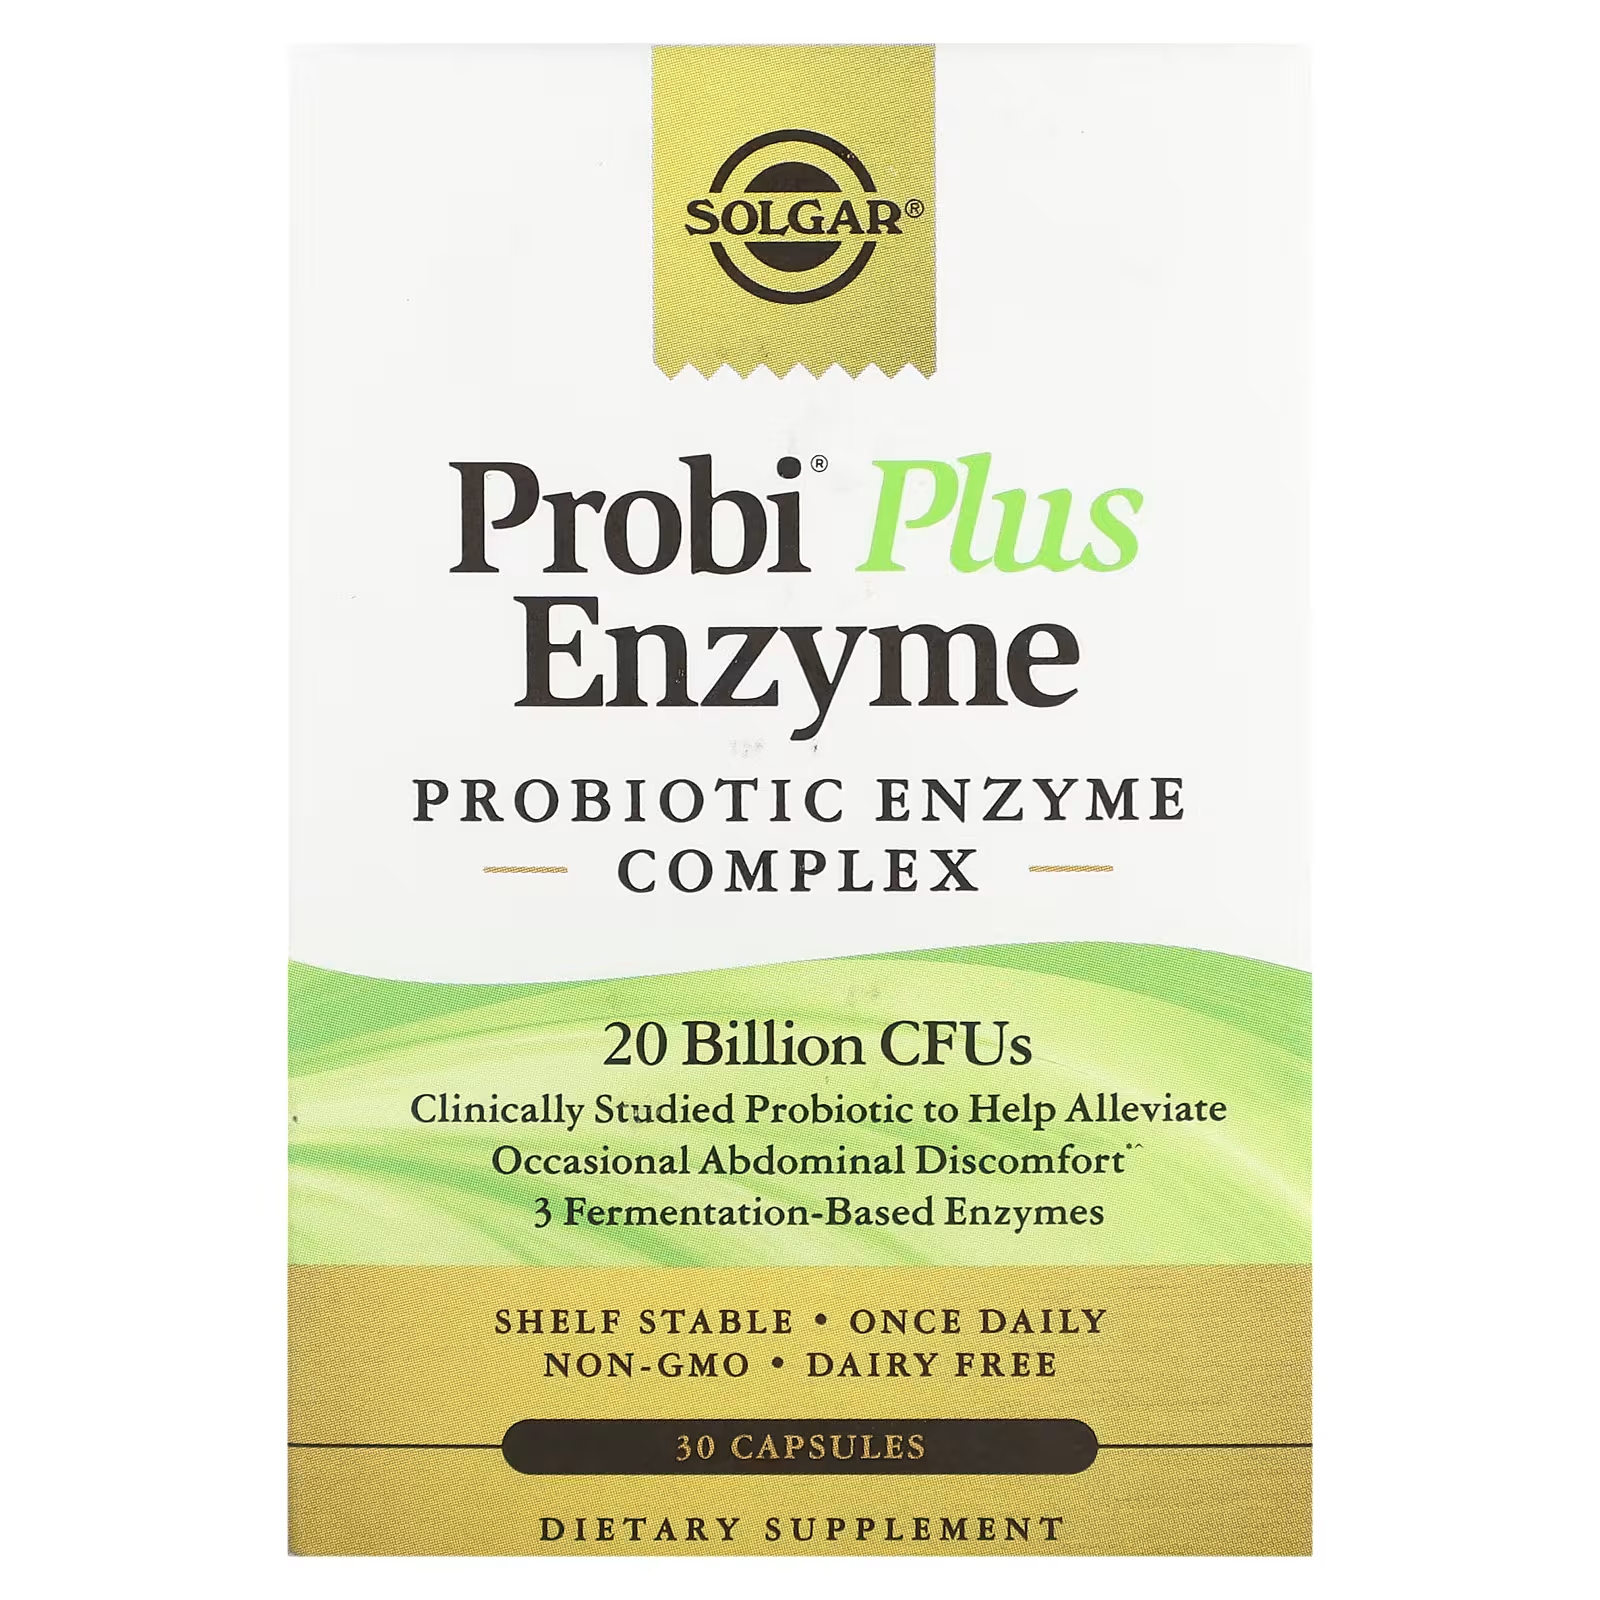 Пробиотический ферментный комплекс Solgar Probi Plus Enzyme, 30 капсул